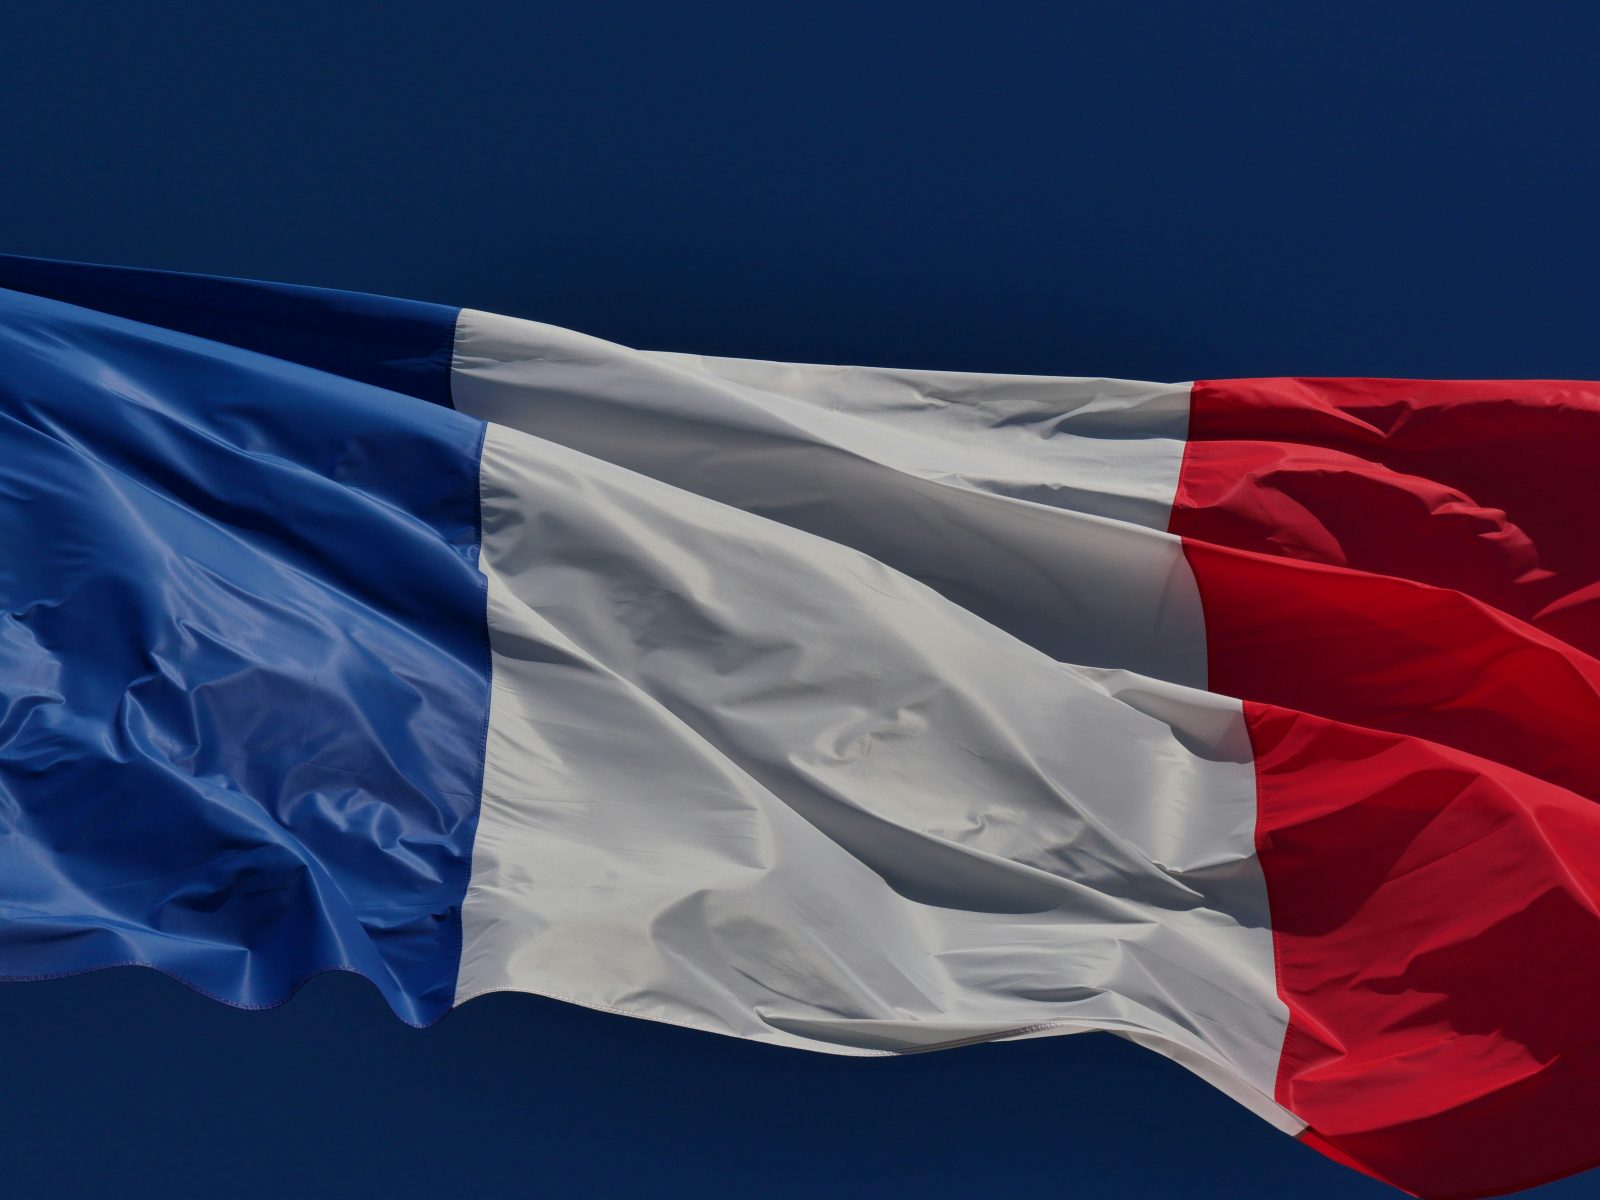 Alice & Bob は、フランスのサイバーセキュリティに焦点を当てた PROQCIMA プログラムに選ばれたフランス企業 5 社のうちの XNUMX 社です。